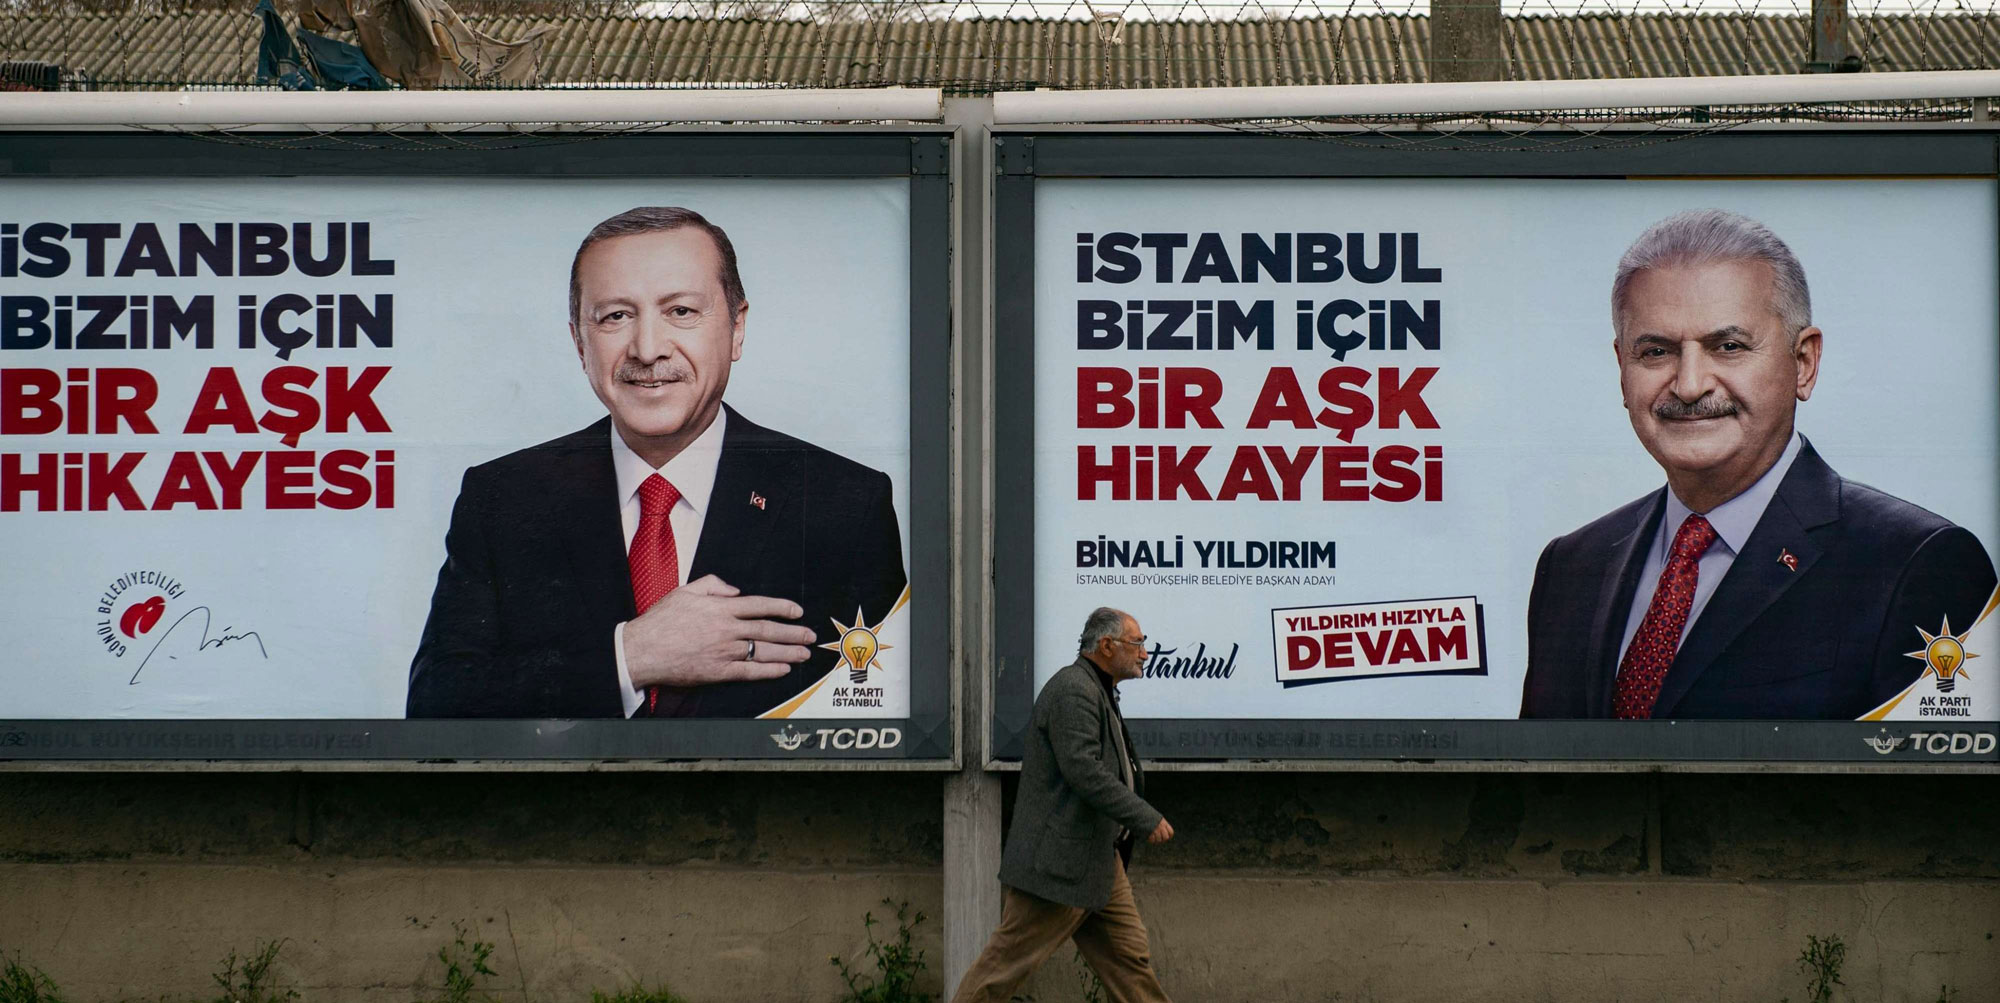 الرئيس التركي رجب طيب اردوغان يراهن على رئيس وزرائه السابق لانتزاع فوز صعب في اسطنبول